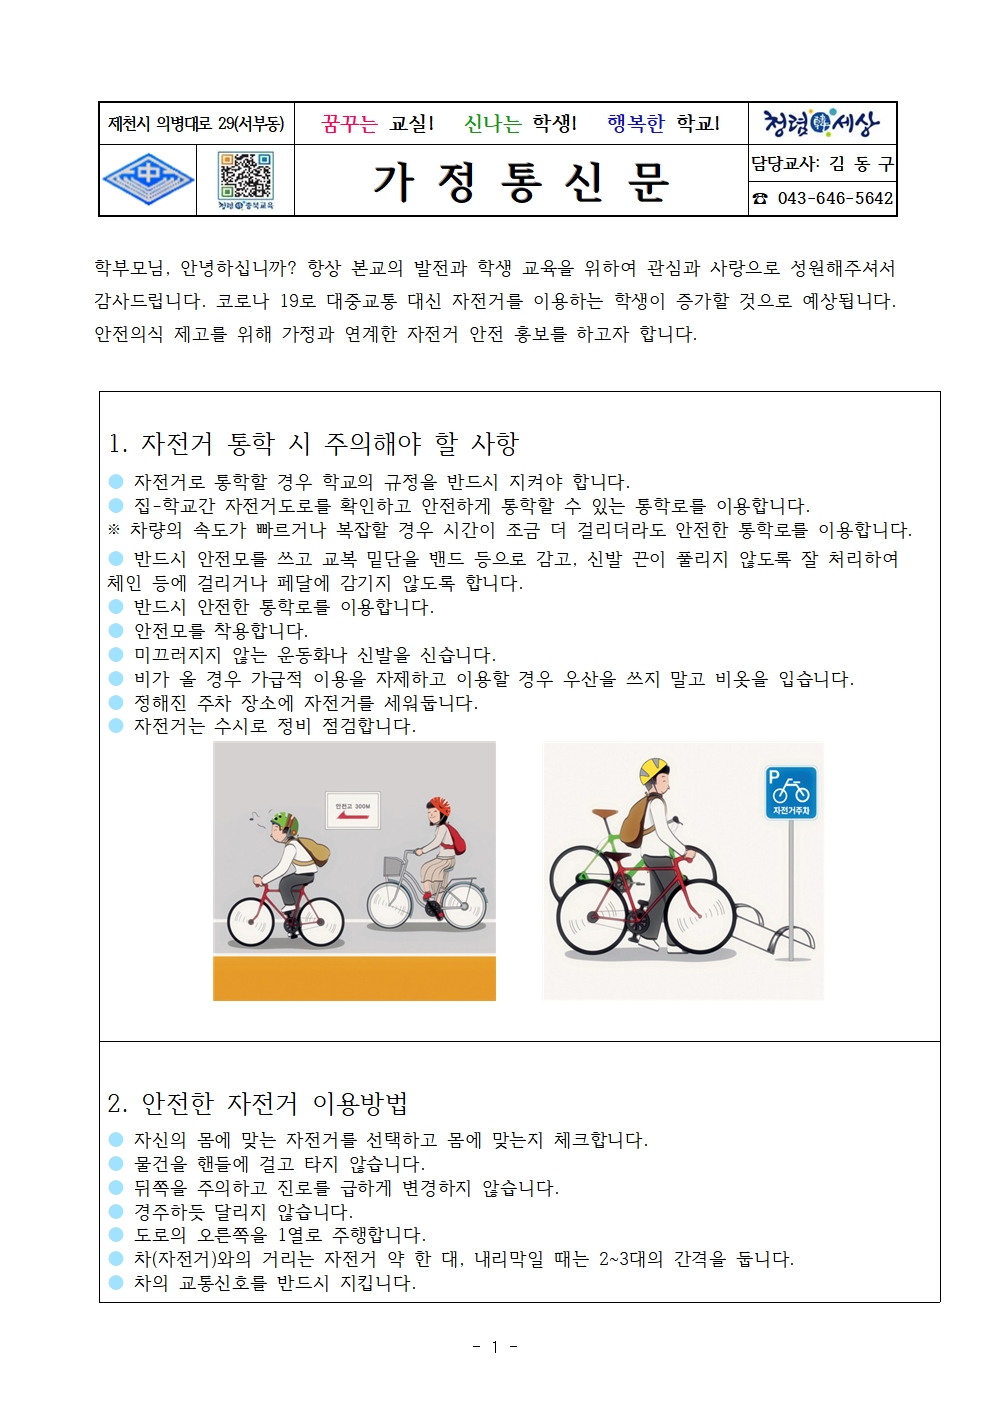 2020. 학생 교통사고 예방을 위한 자전거 안전교육 안내 가정통신문